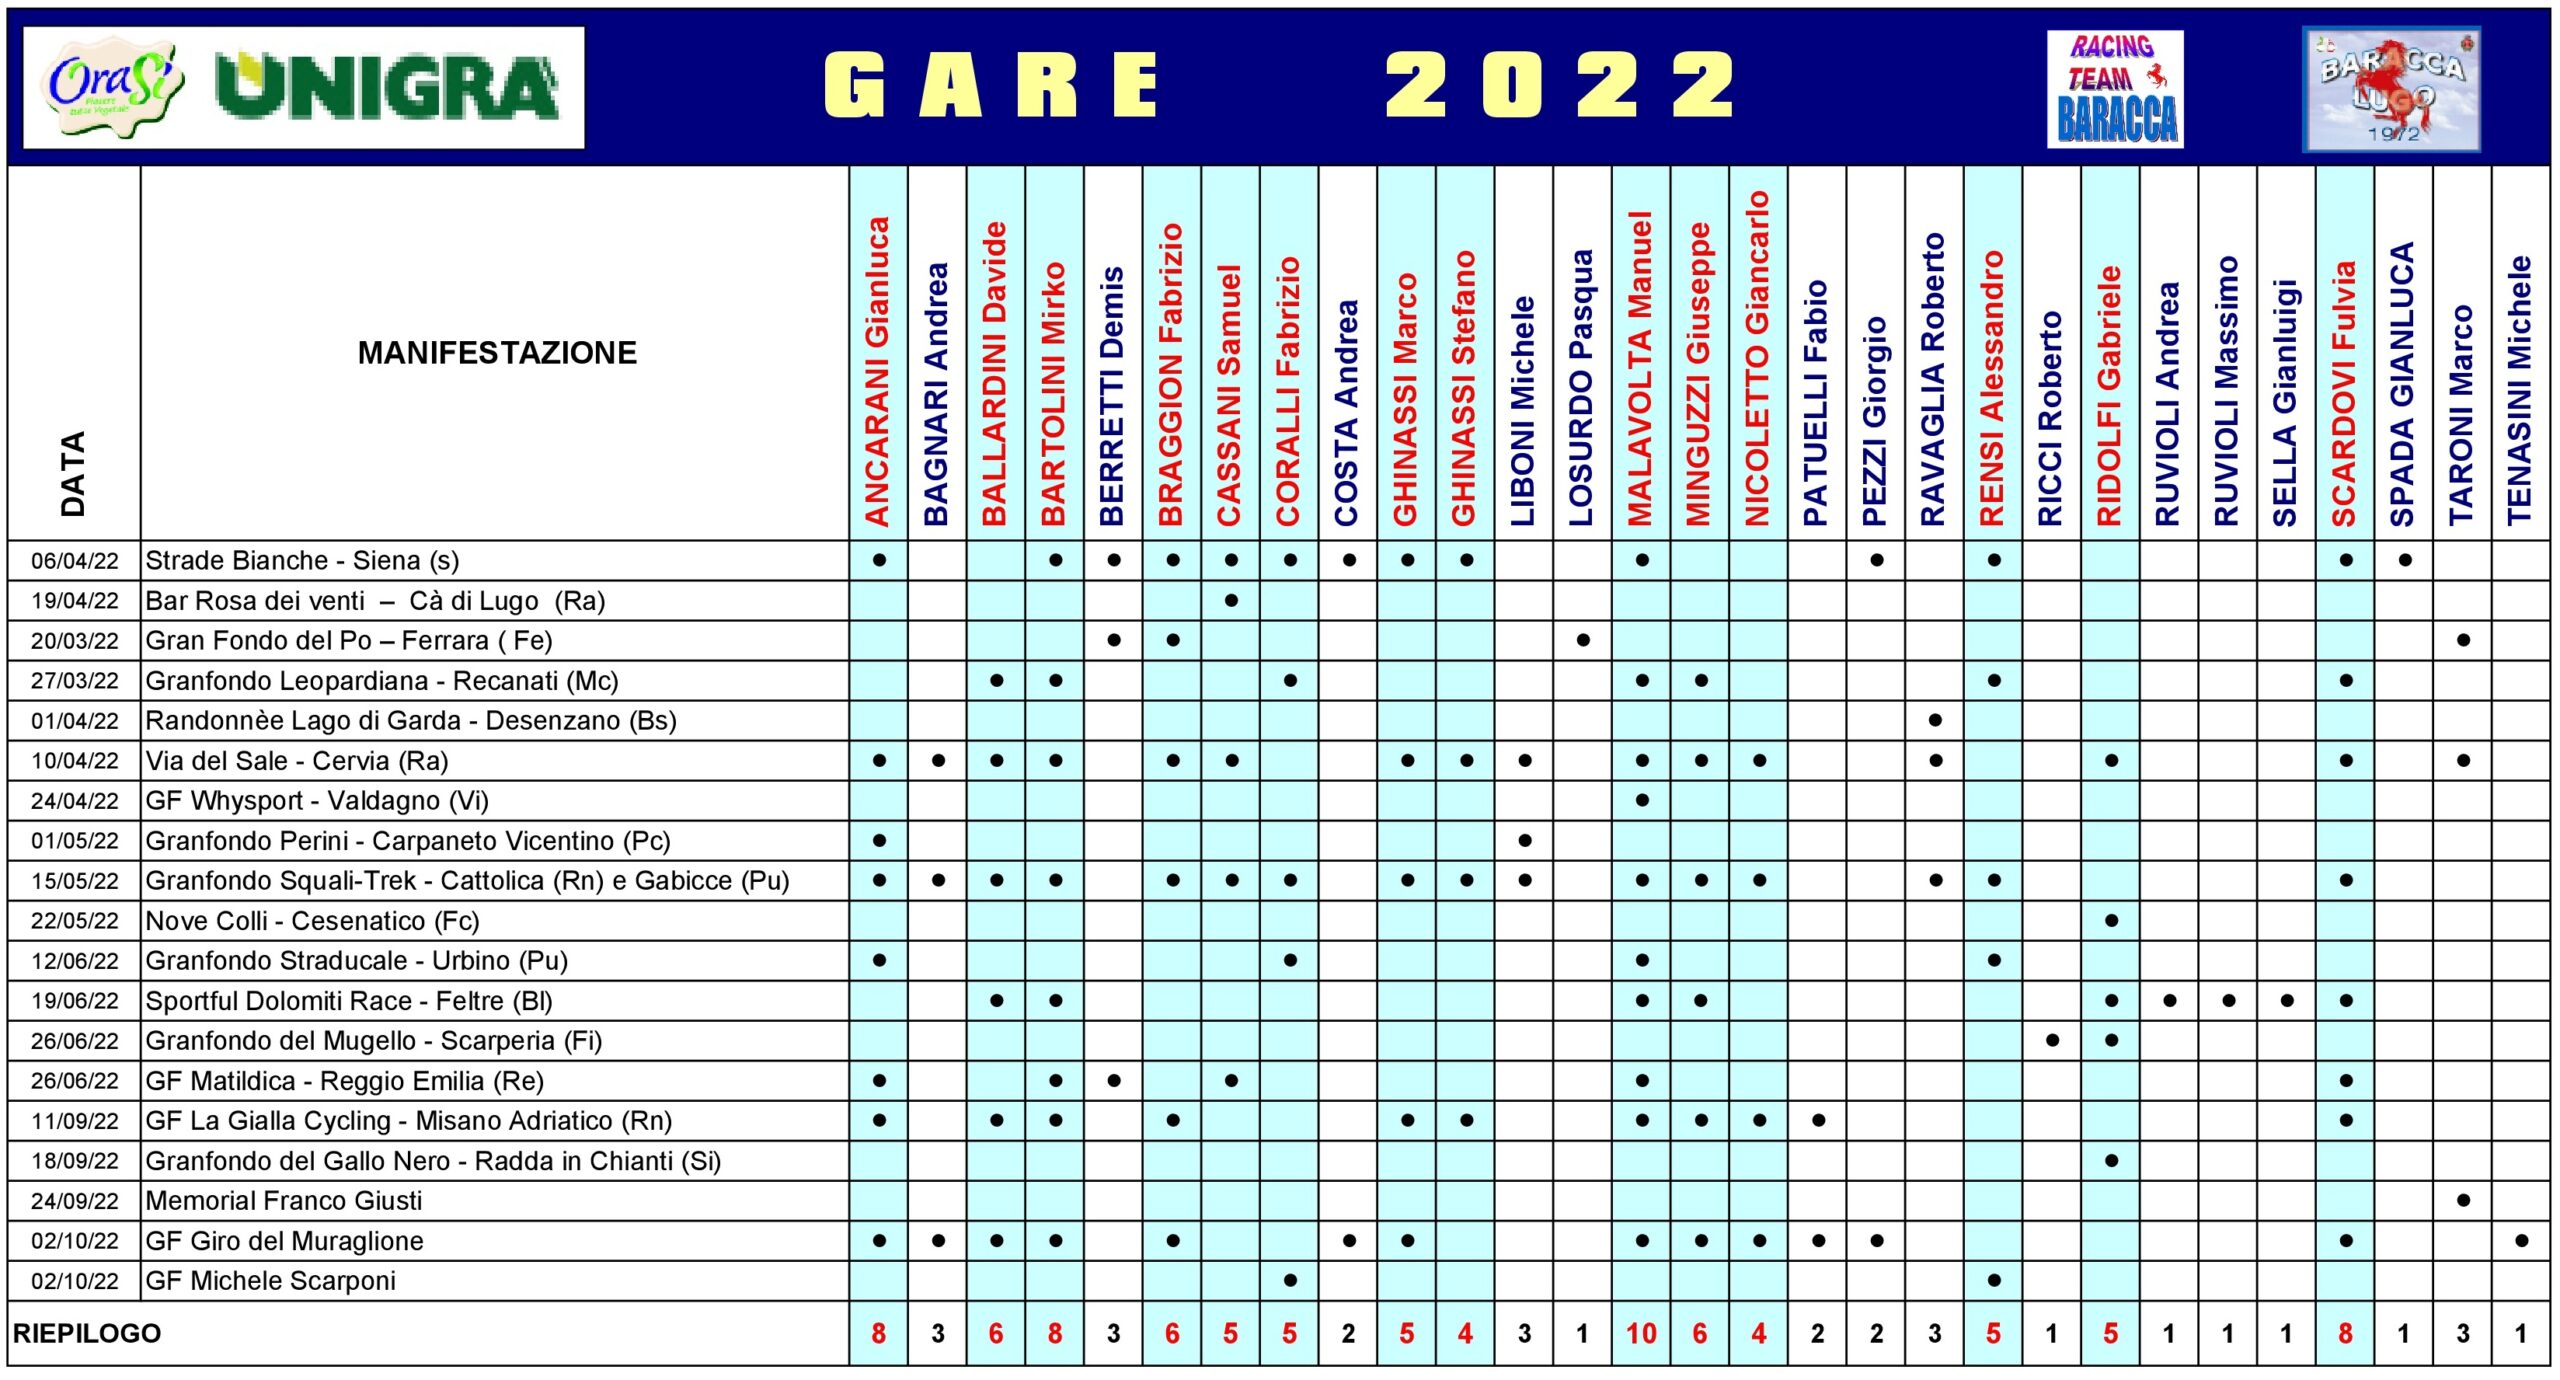 Riepilogo partecipazioni gare 2022 agg02 10 scaled